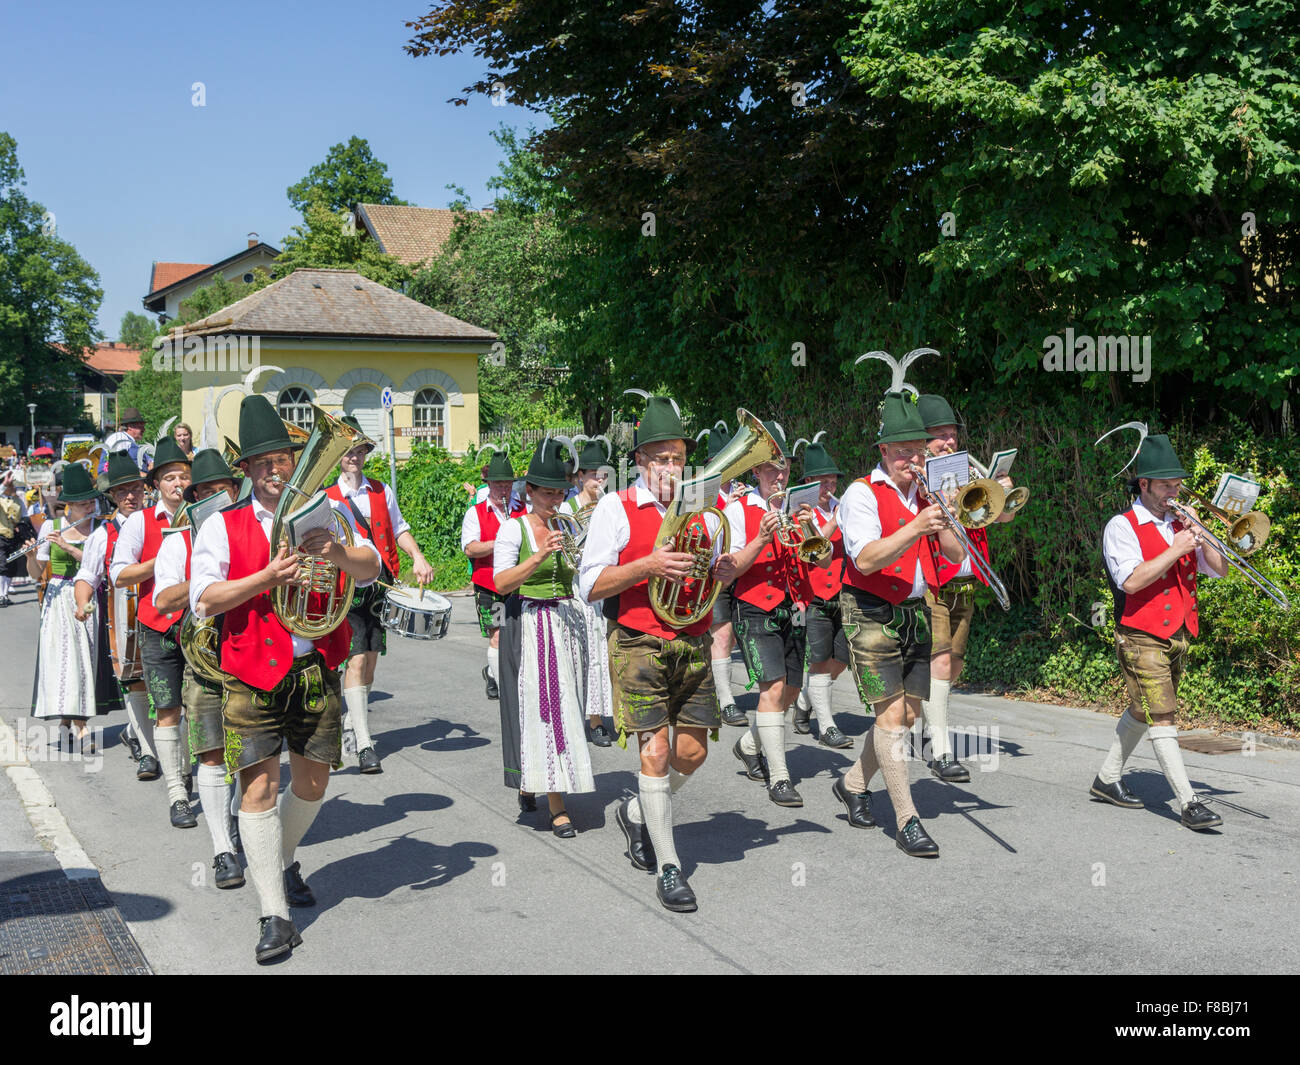 Marching Band in Parade am Zoll schlierseer Kirchtag, durch die Stadt, Schliersee, Bayern, Deutschland Stockfoto